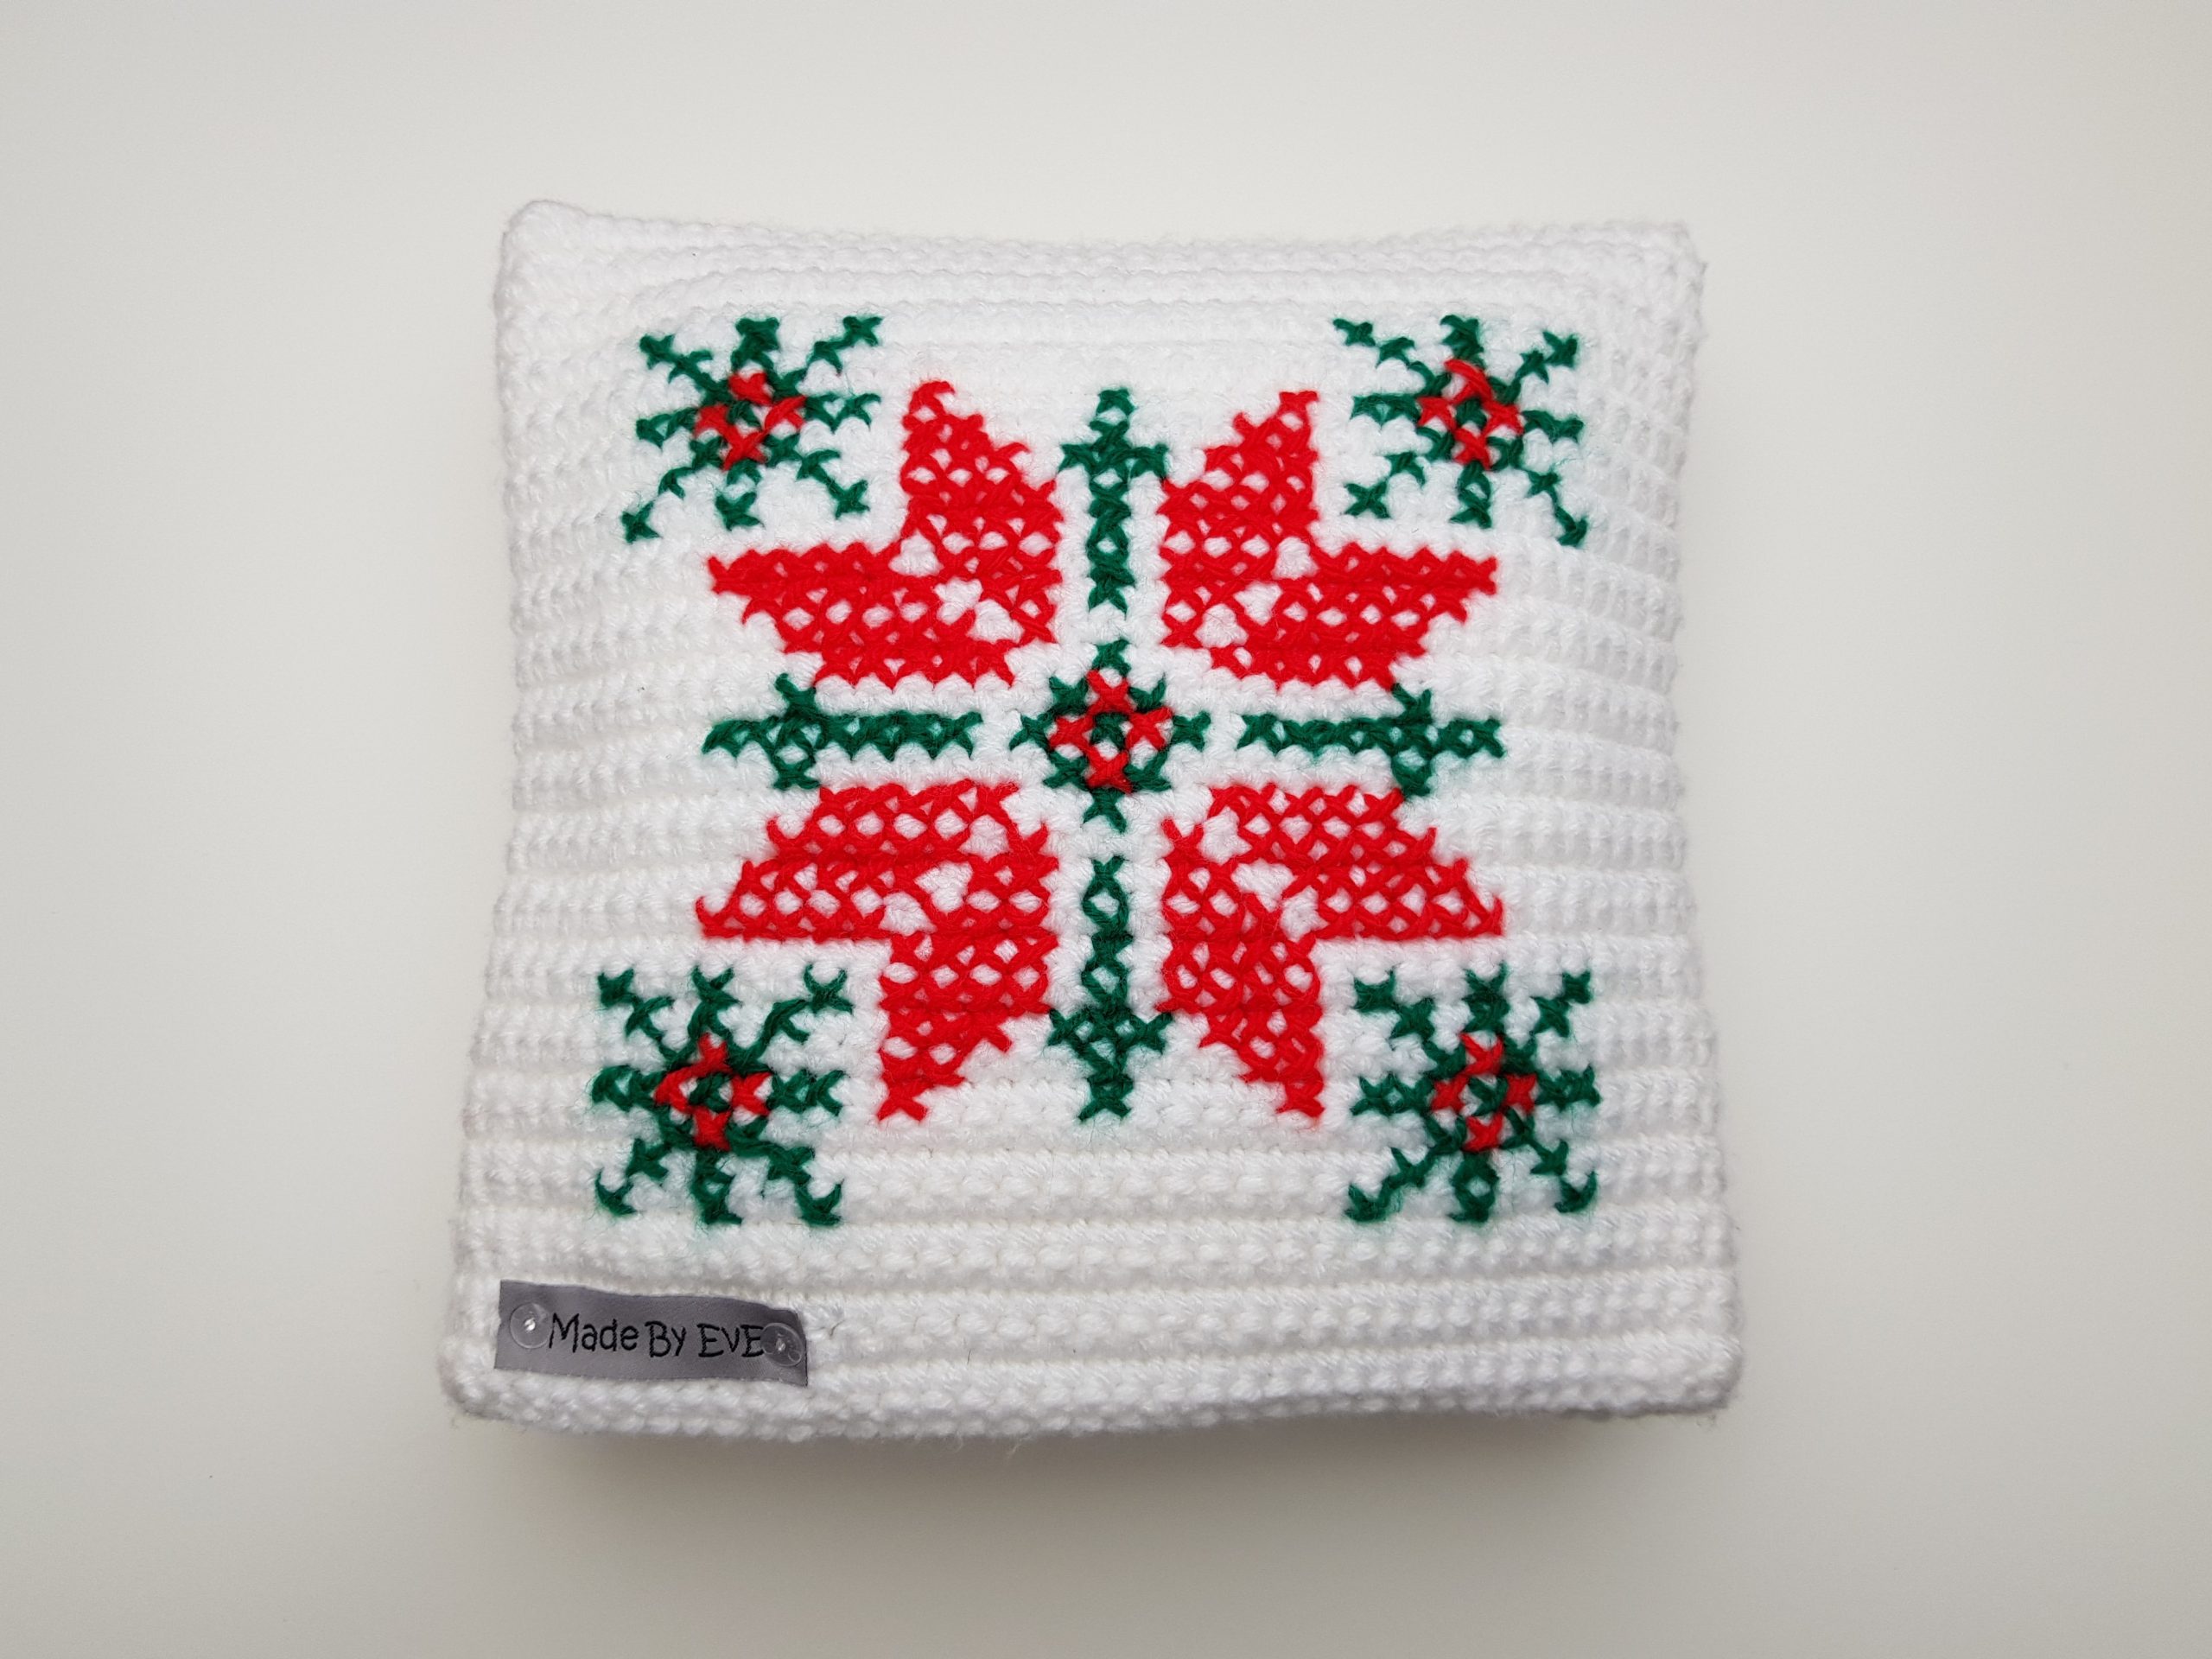 Kissenbezug-Weihnachten-XS-gehäkelt-weiß-rot-gras-grün-Stern-Hirsch-bestickt-MadeByEvE